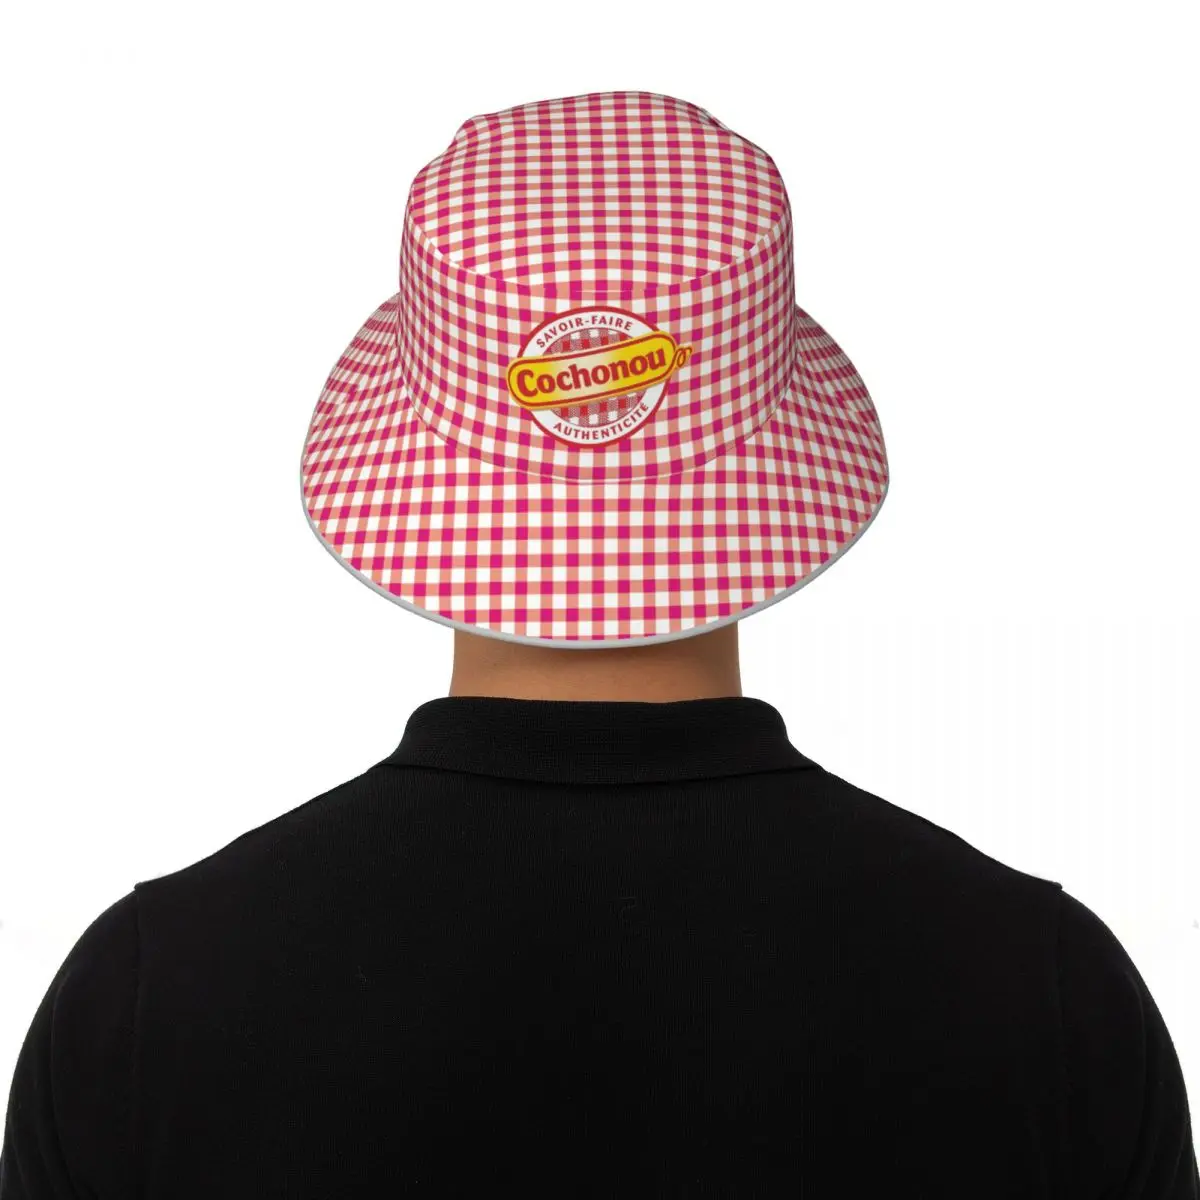 COCHONOU Bob Găleată Pălărie Femei Pescar Fete Casual pentru Bărbați Pălării în aer liber Respirabil Summer Beach Party